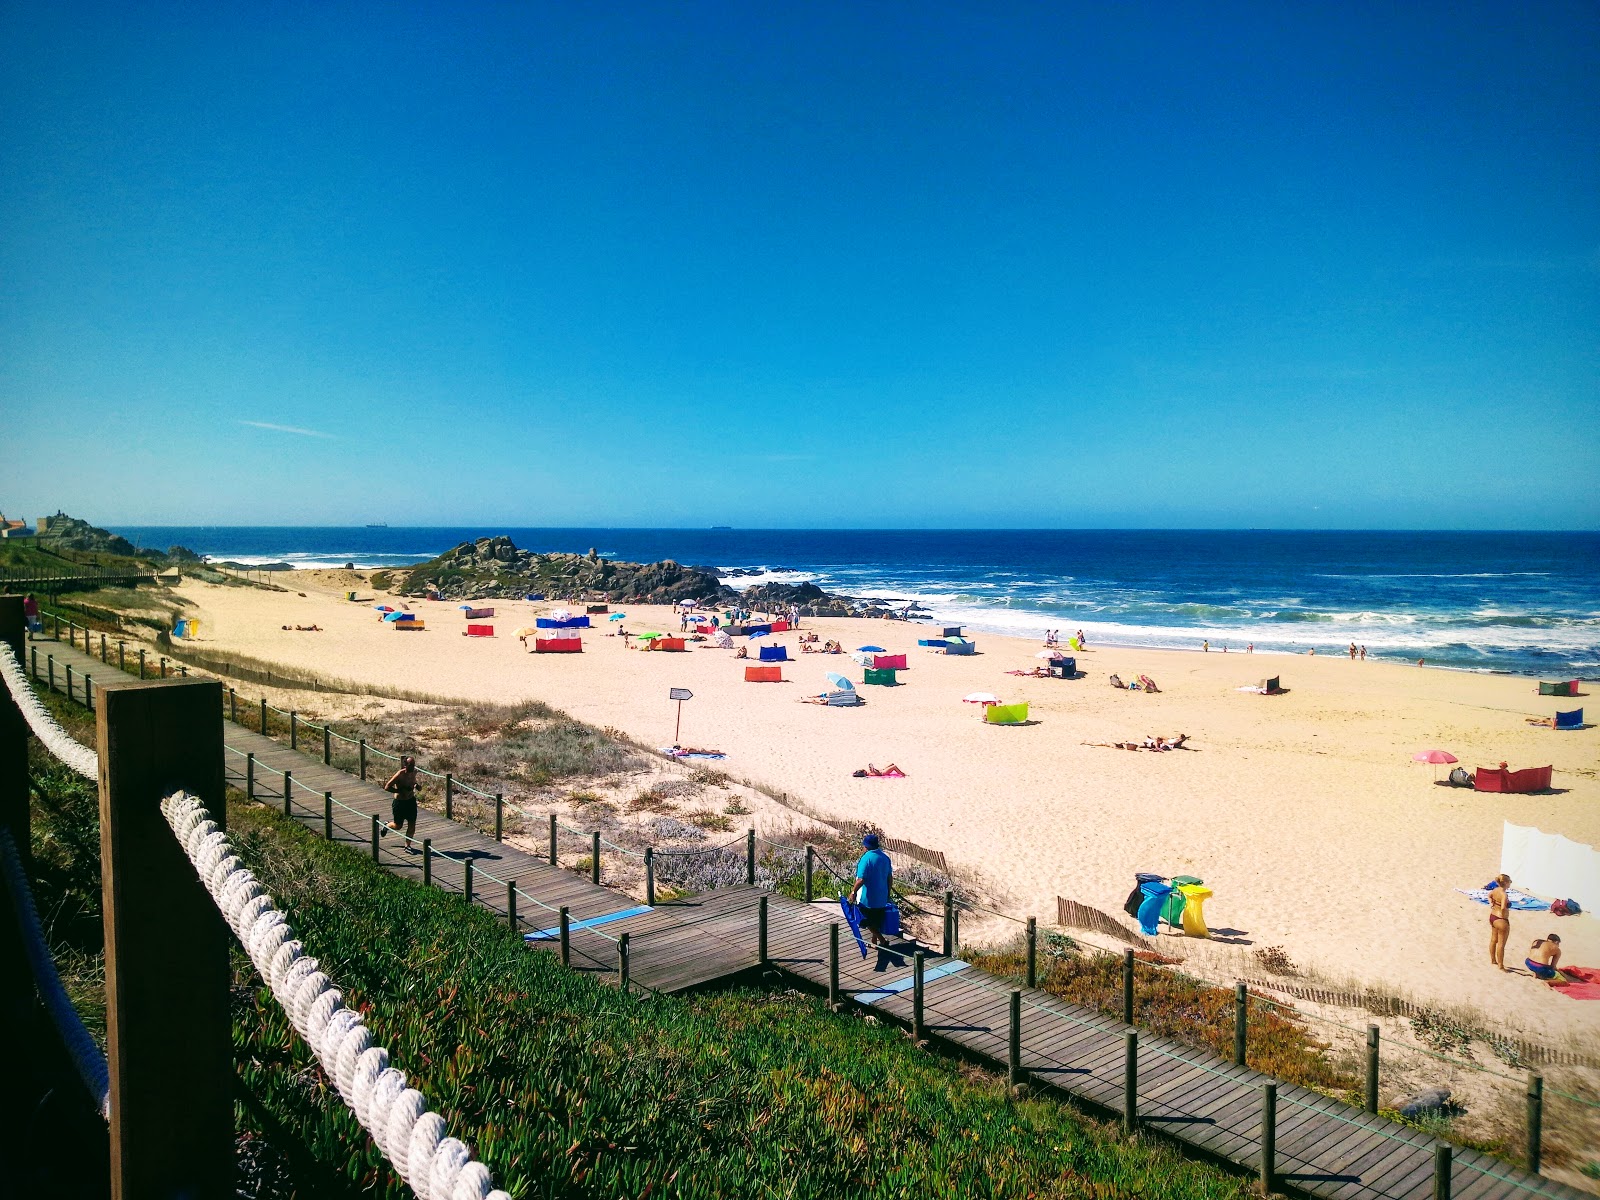 Fotografie cu Praia do Aterro cu o suprafață de nisip fin strălucitor